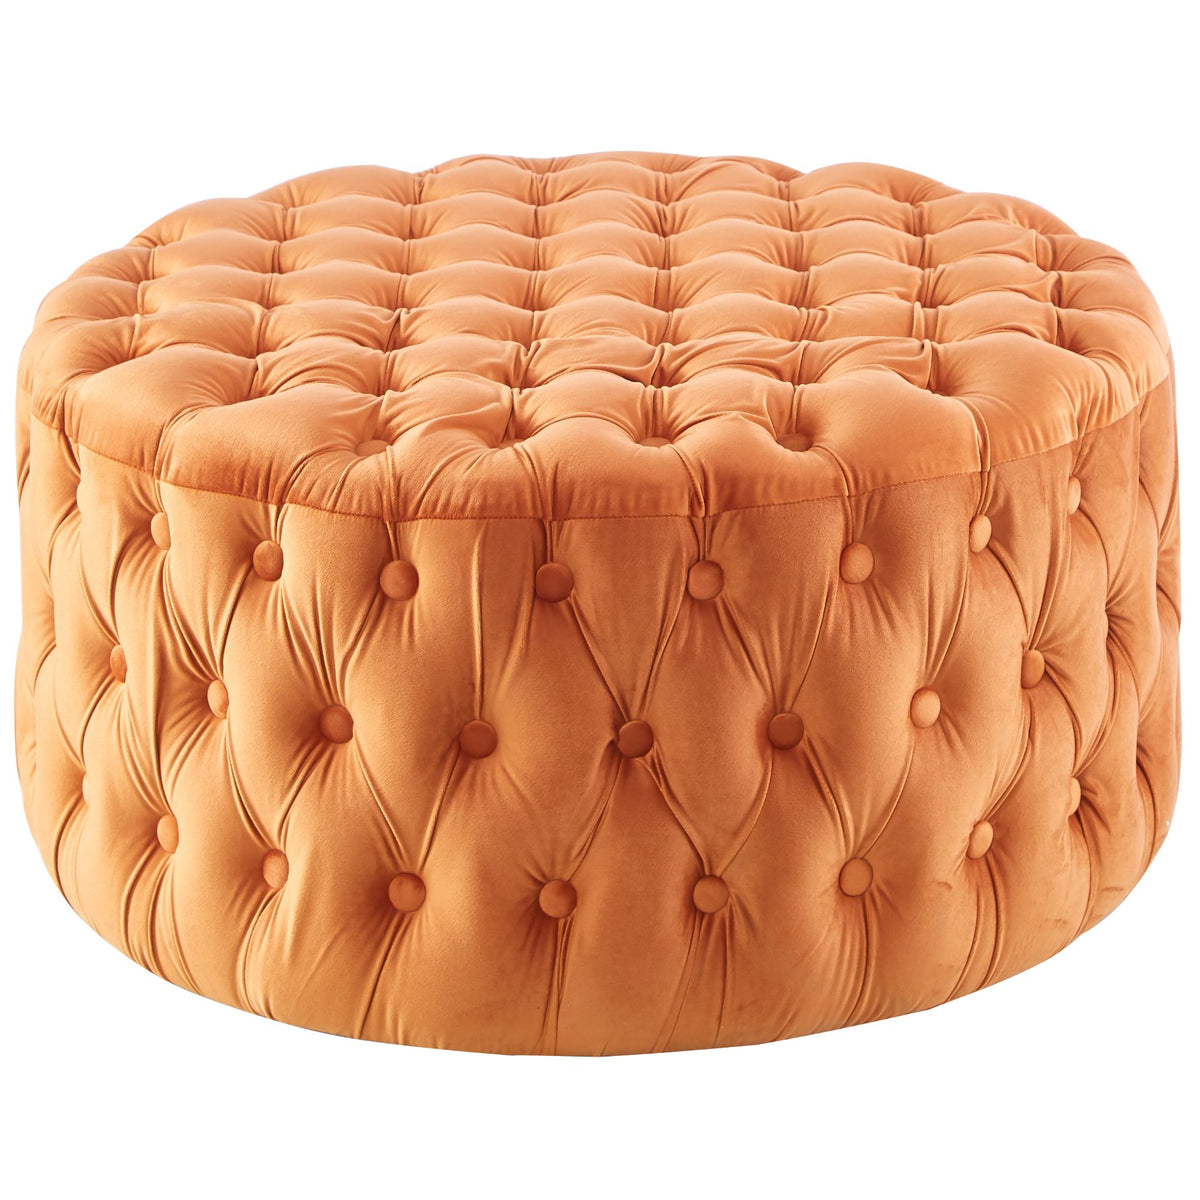 Uzona Tufted Velvet Fabric Round Ottoman Footstools - Cinnamon - Notbrand